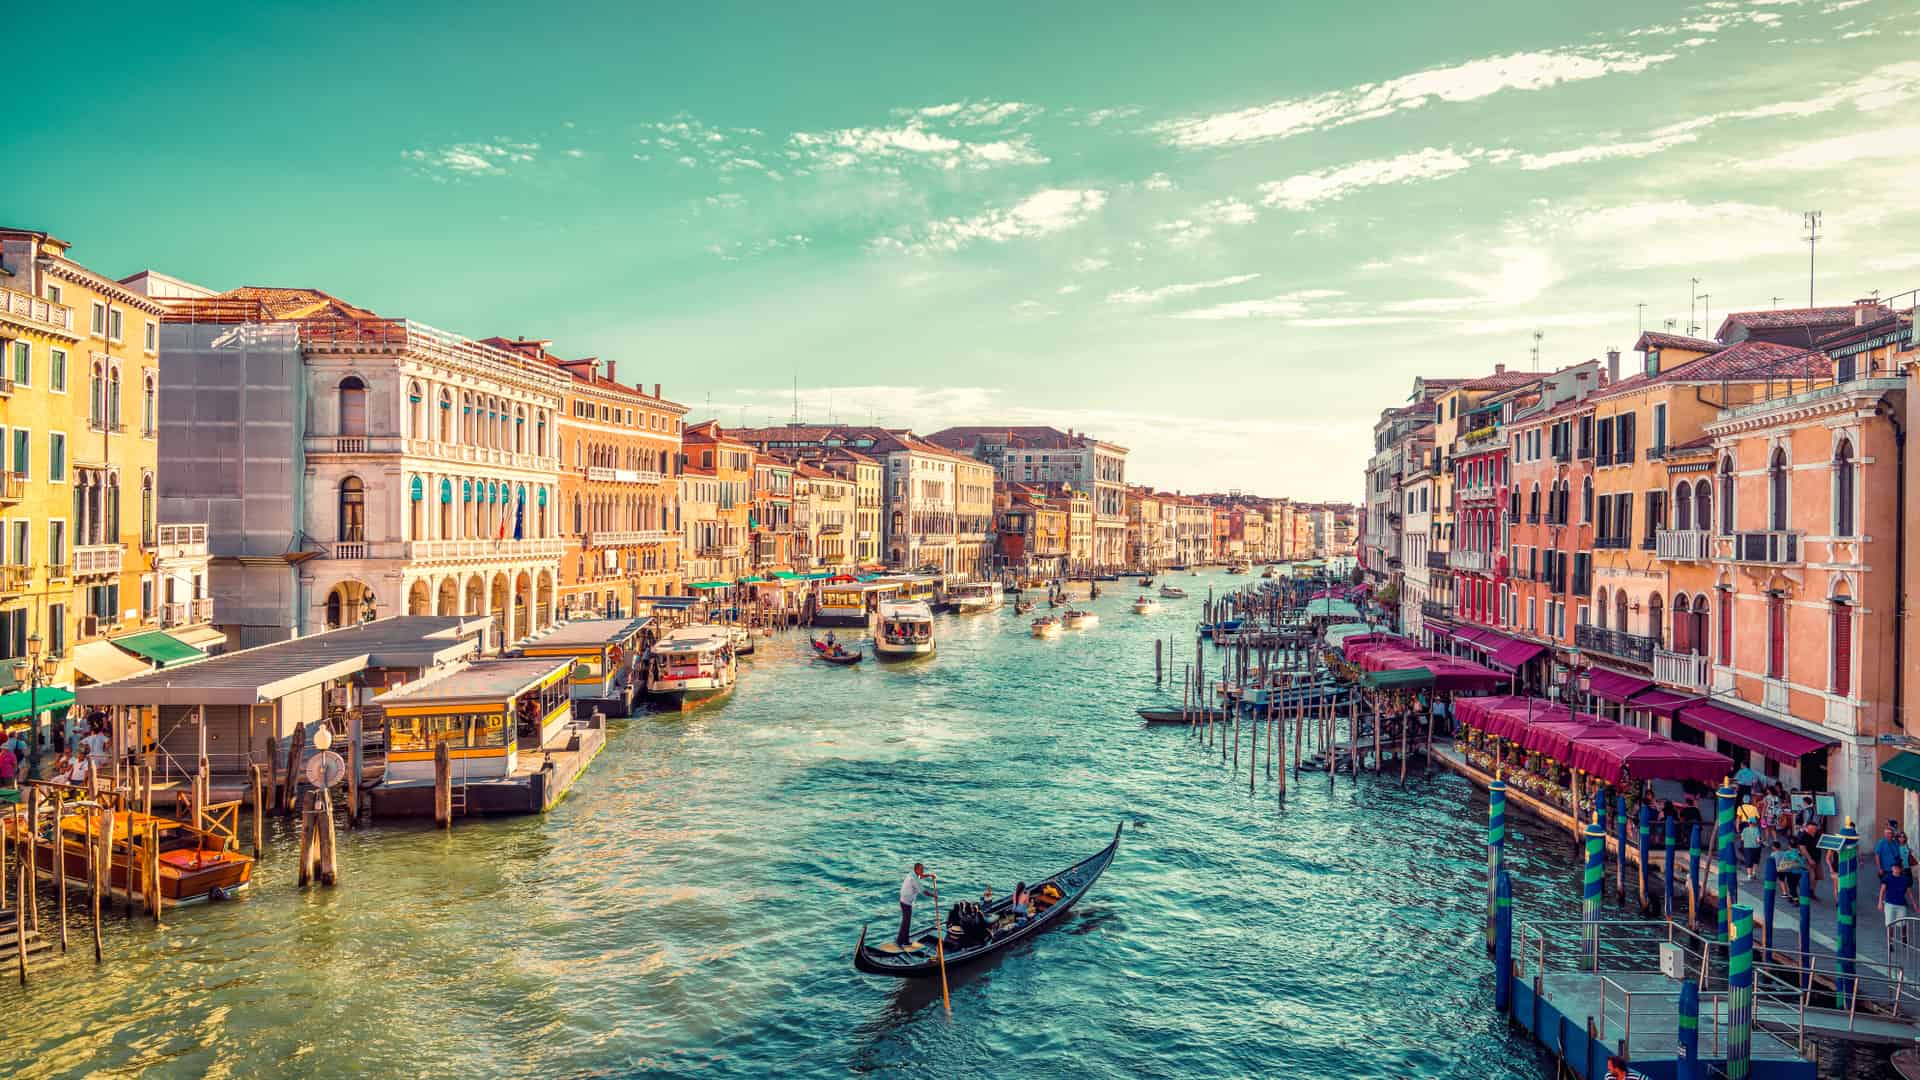 Vista del Gran Canal de Venecia.Lugar para el cual se puede contratar un seguro de viaje